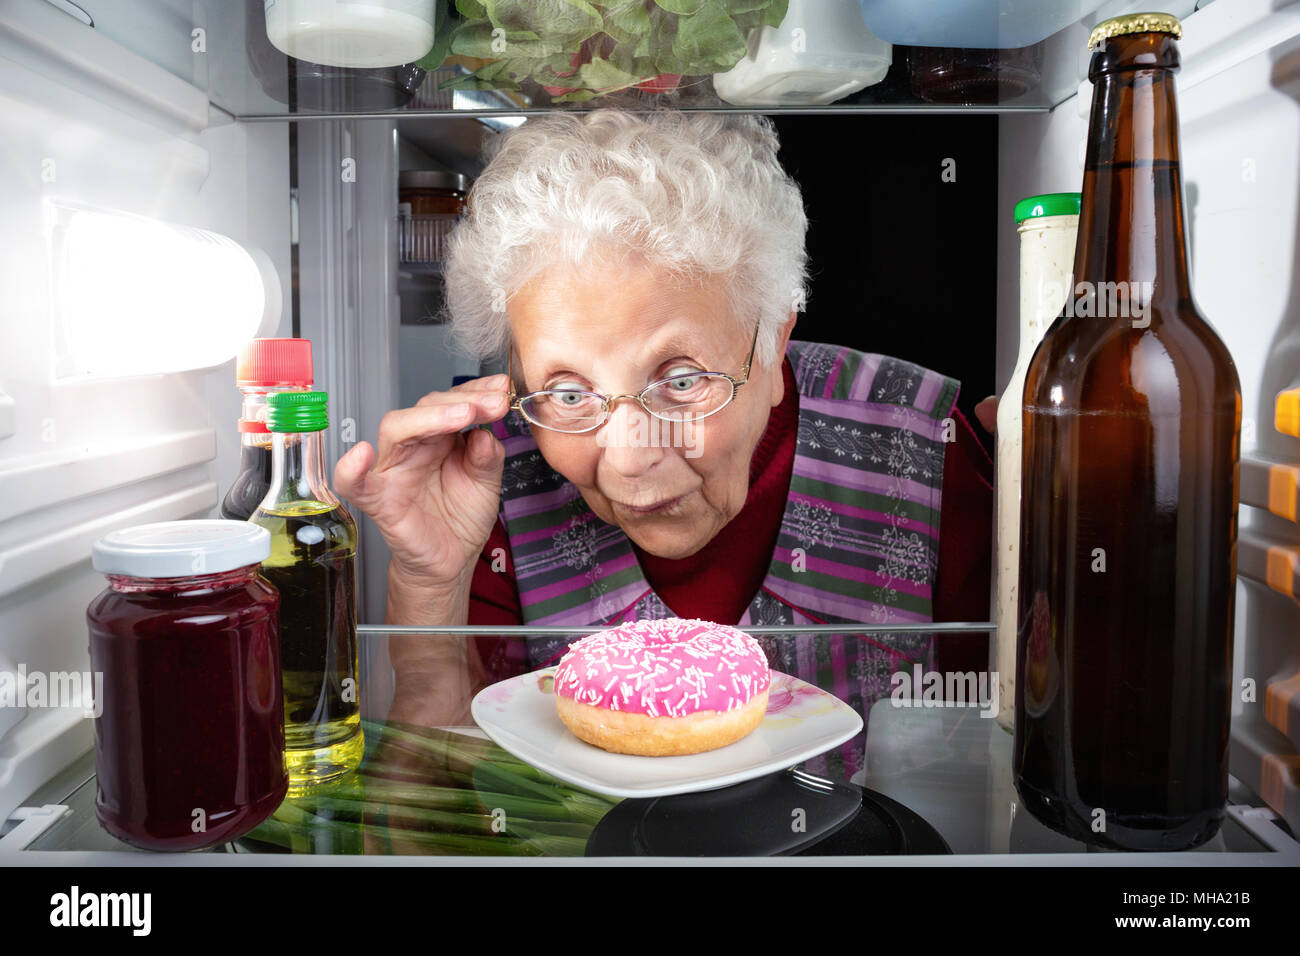 La abuela descubriendo un donut en la nevera Foto de stock